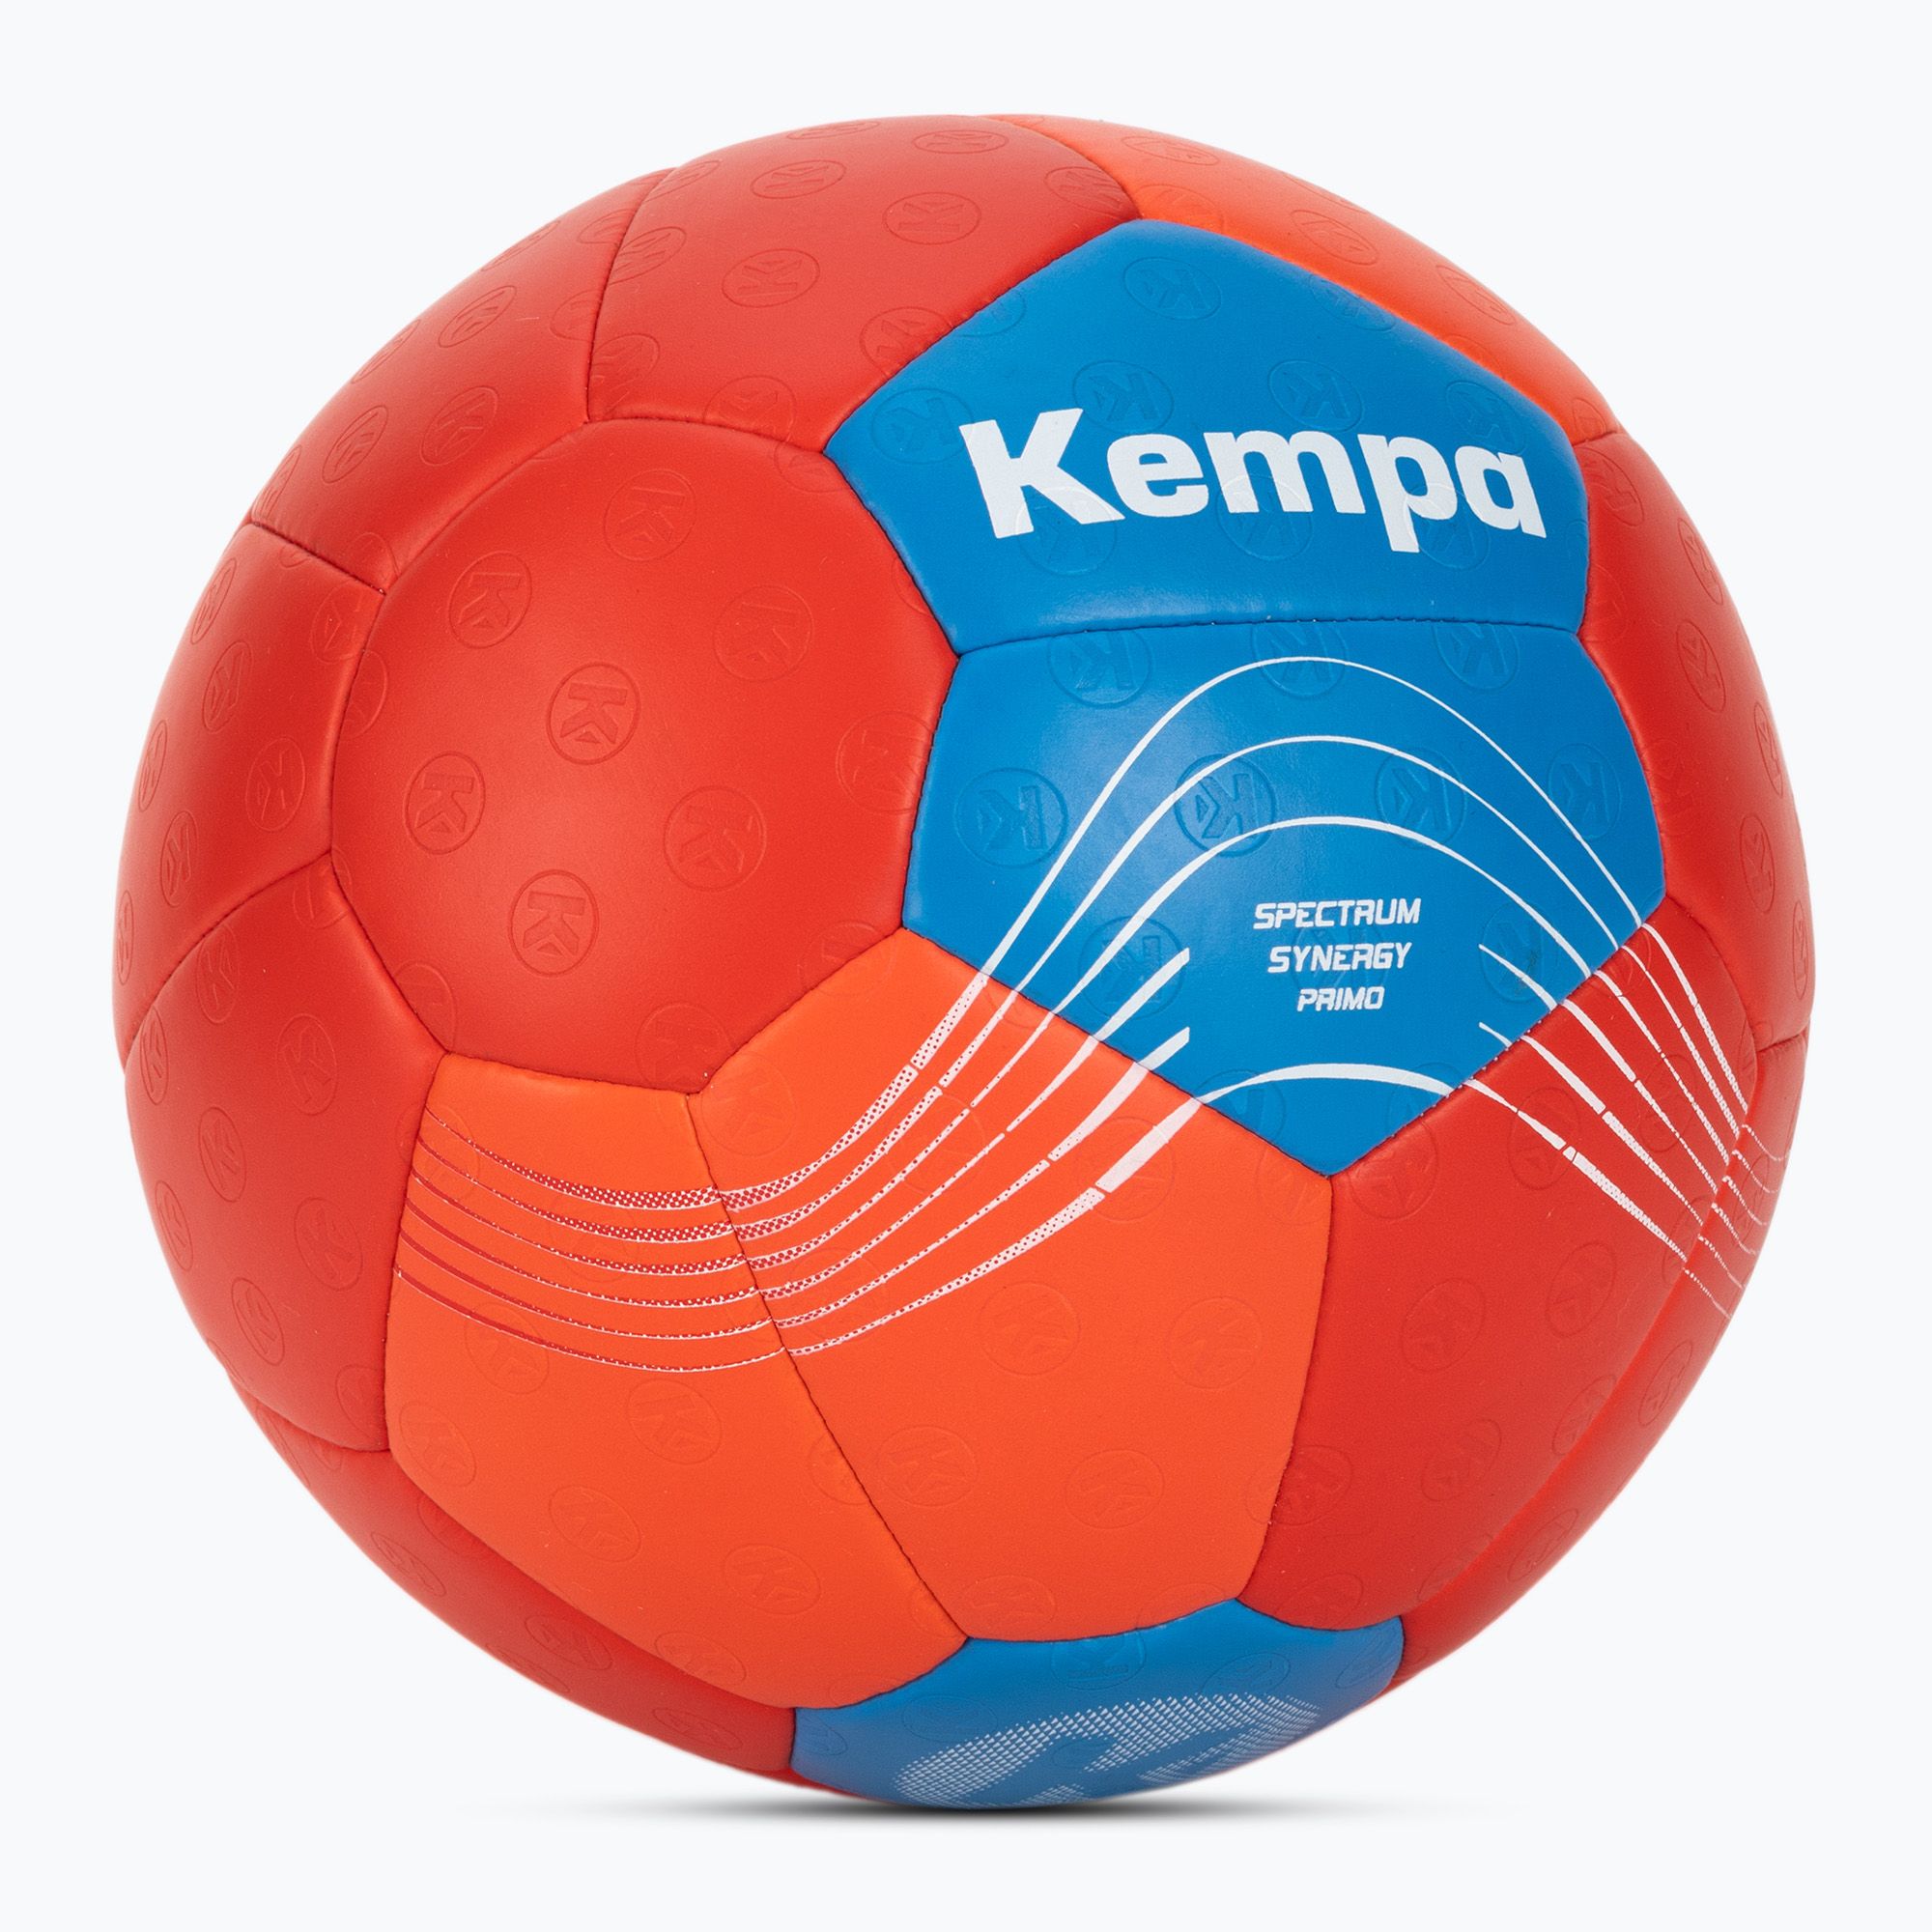 Piłka do piłki ręcznej Kempa Spectrum Synergy Primo czerwona/niebieska rozmiar 3 zdjęcie nr 2